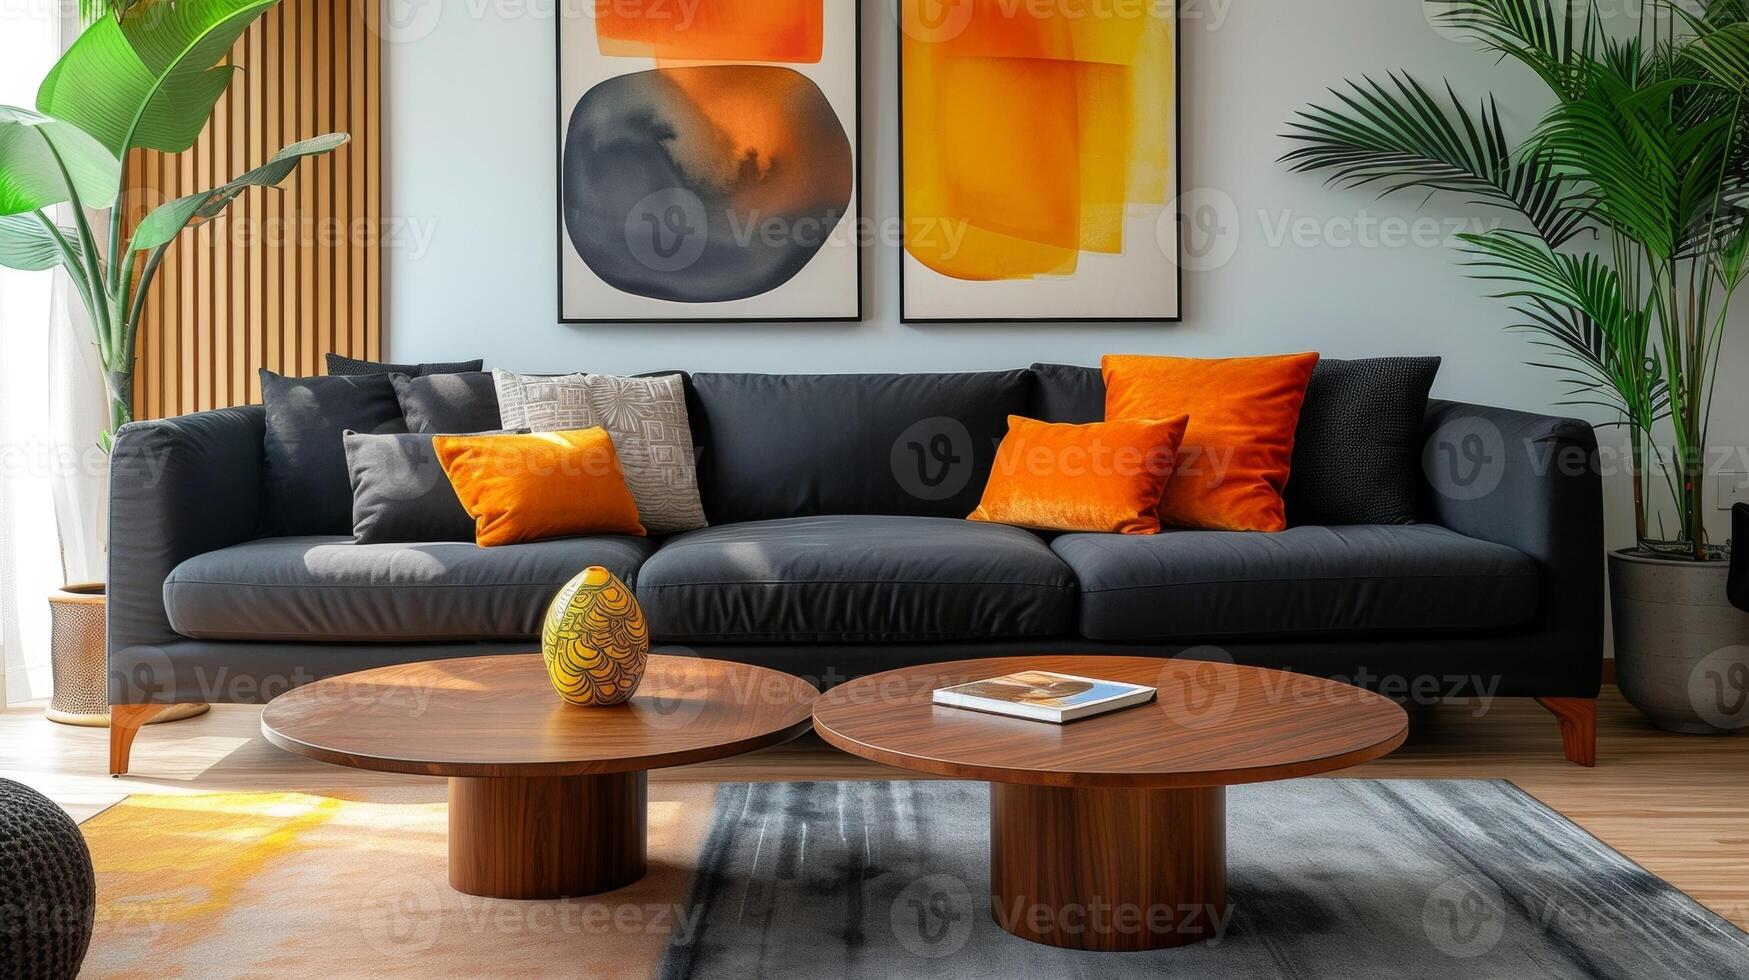 ein modern Leben Zimmer mit ein glatt schwarz Couch ein minimalistisch hölzern Kaffee Tabelle und ein wenige Fett gedruckt Kunst Stücke zeigen Das Pensionierung Leben können Sein stilvoll und rationalisiert Witz foto